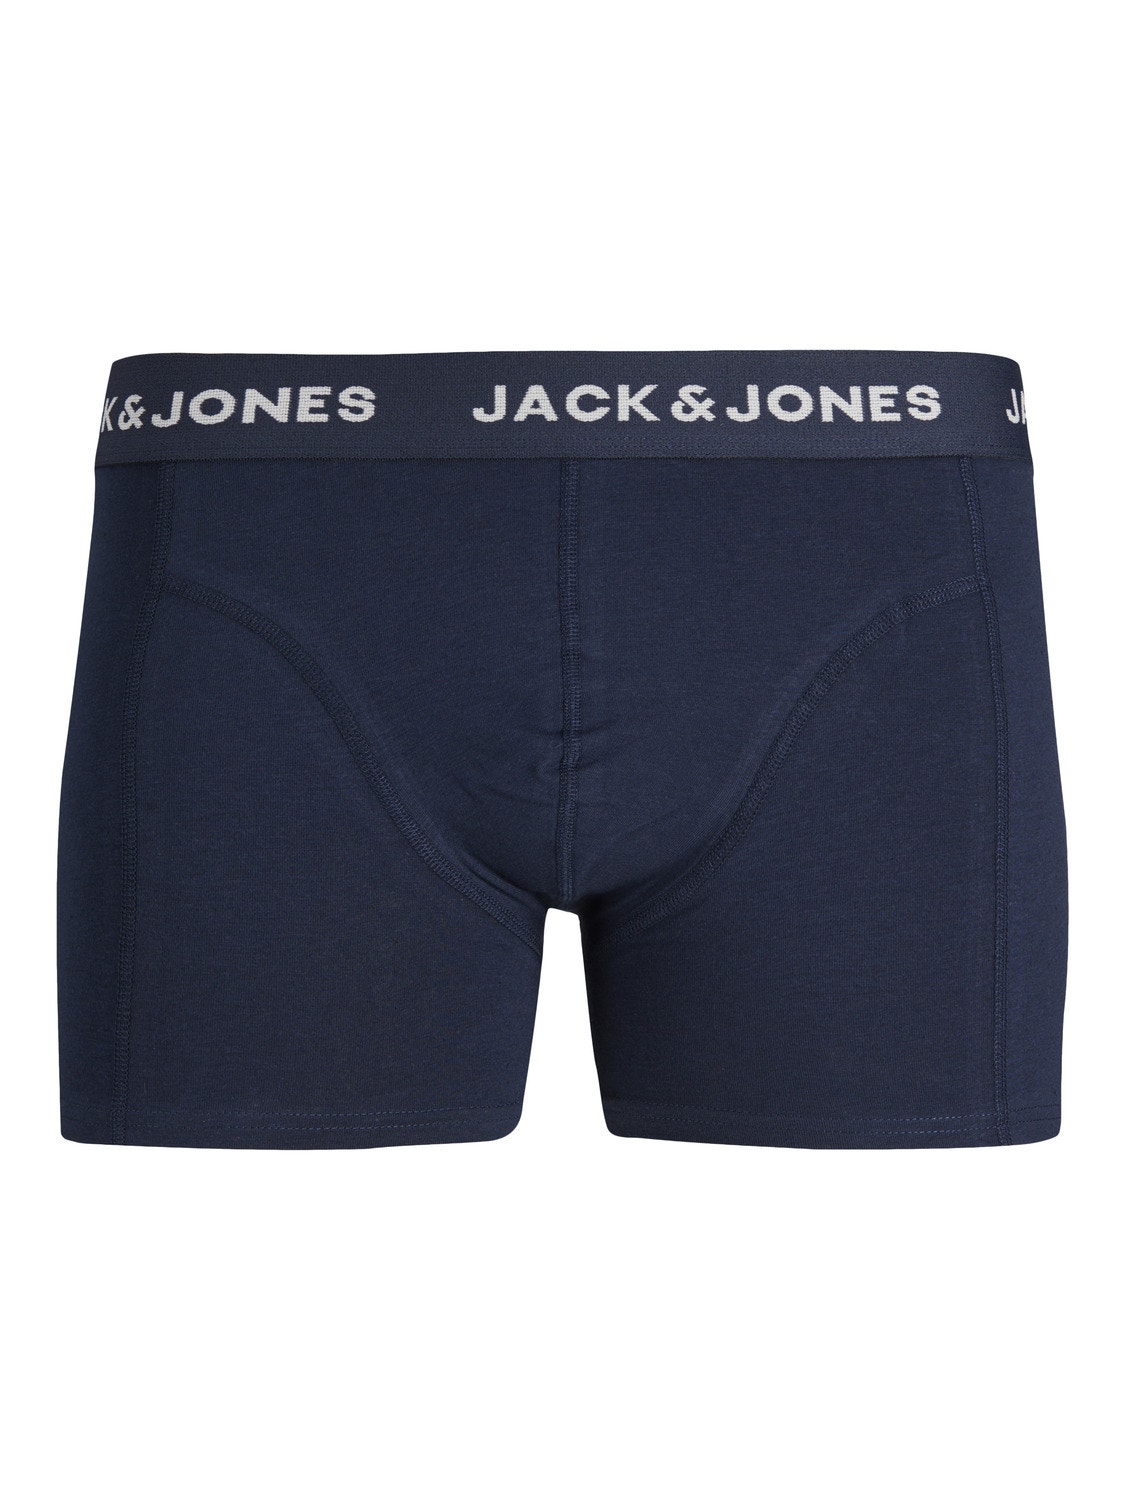 Jack & Jones 3-pakuotės Trumpikės -Navy Blazer - 12250611